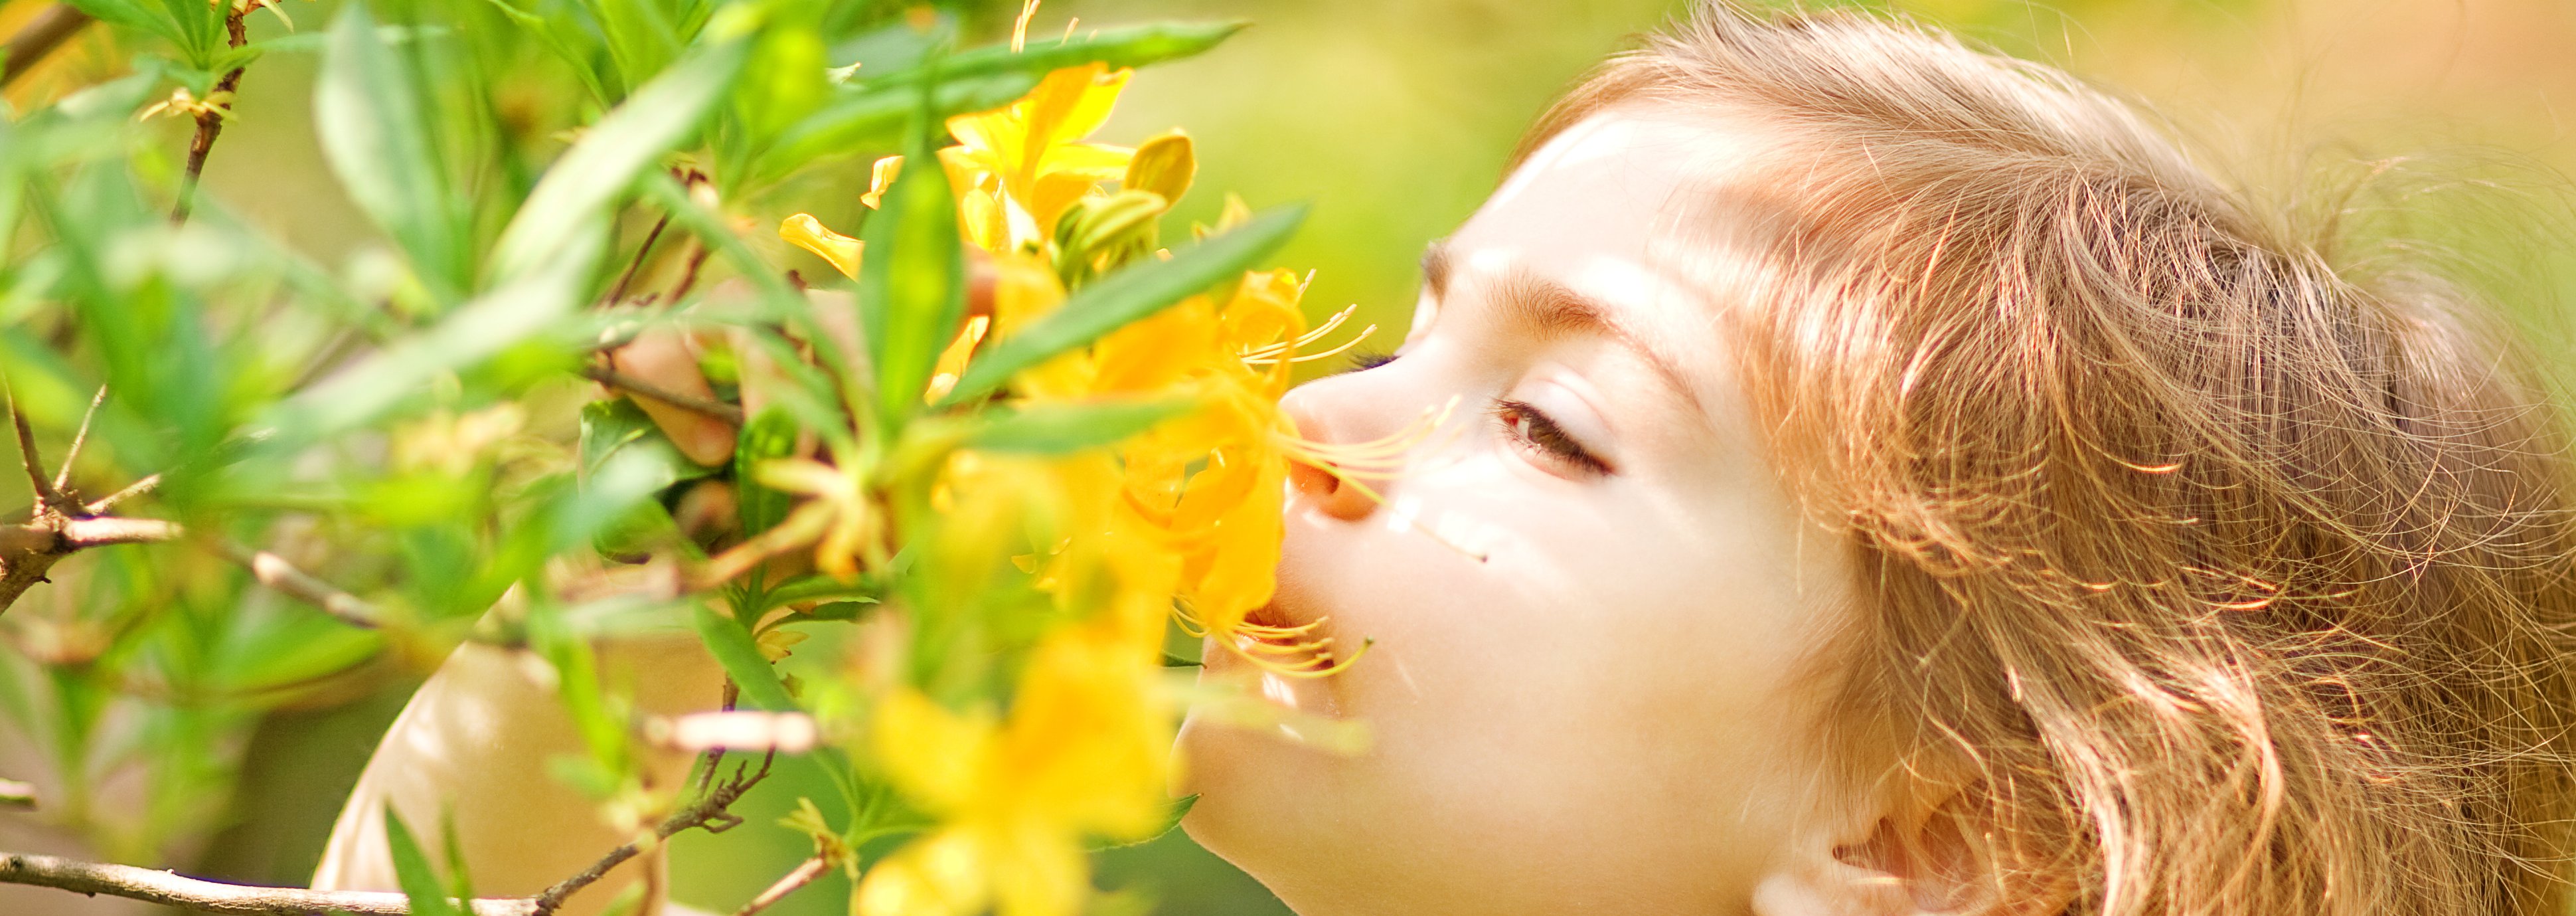 Kleines Mädchen riecht an gelber Blume